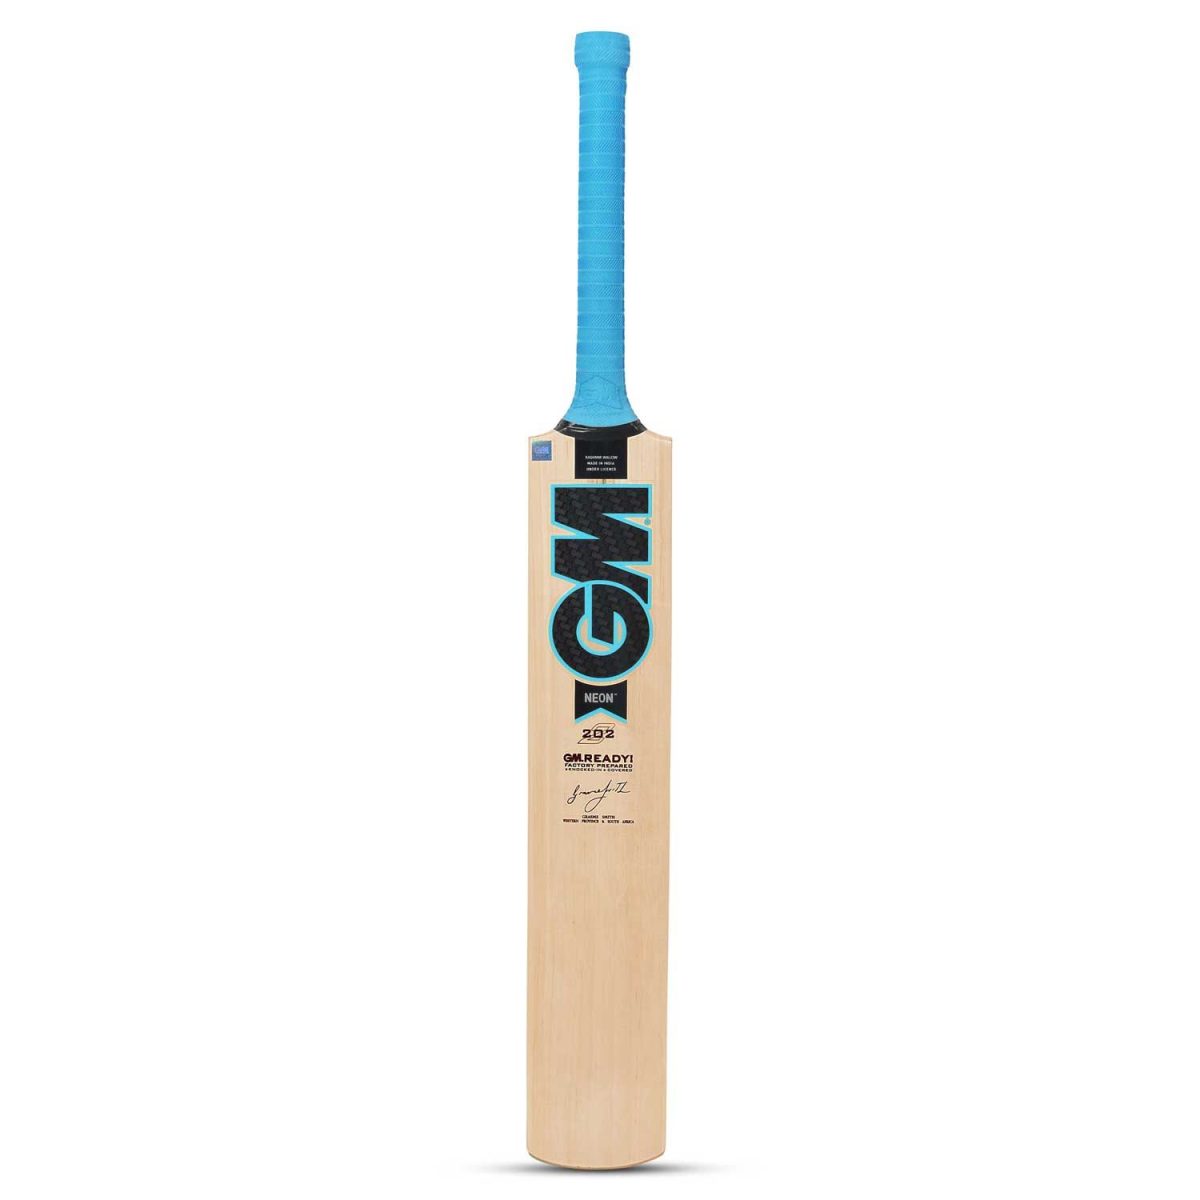 Top 10 Best cricket bats in India - GM Neon 202 Kashmir – Junior 6/5